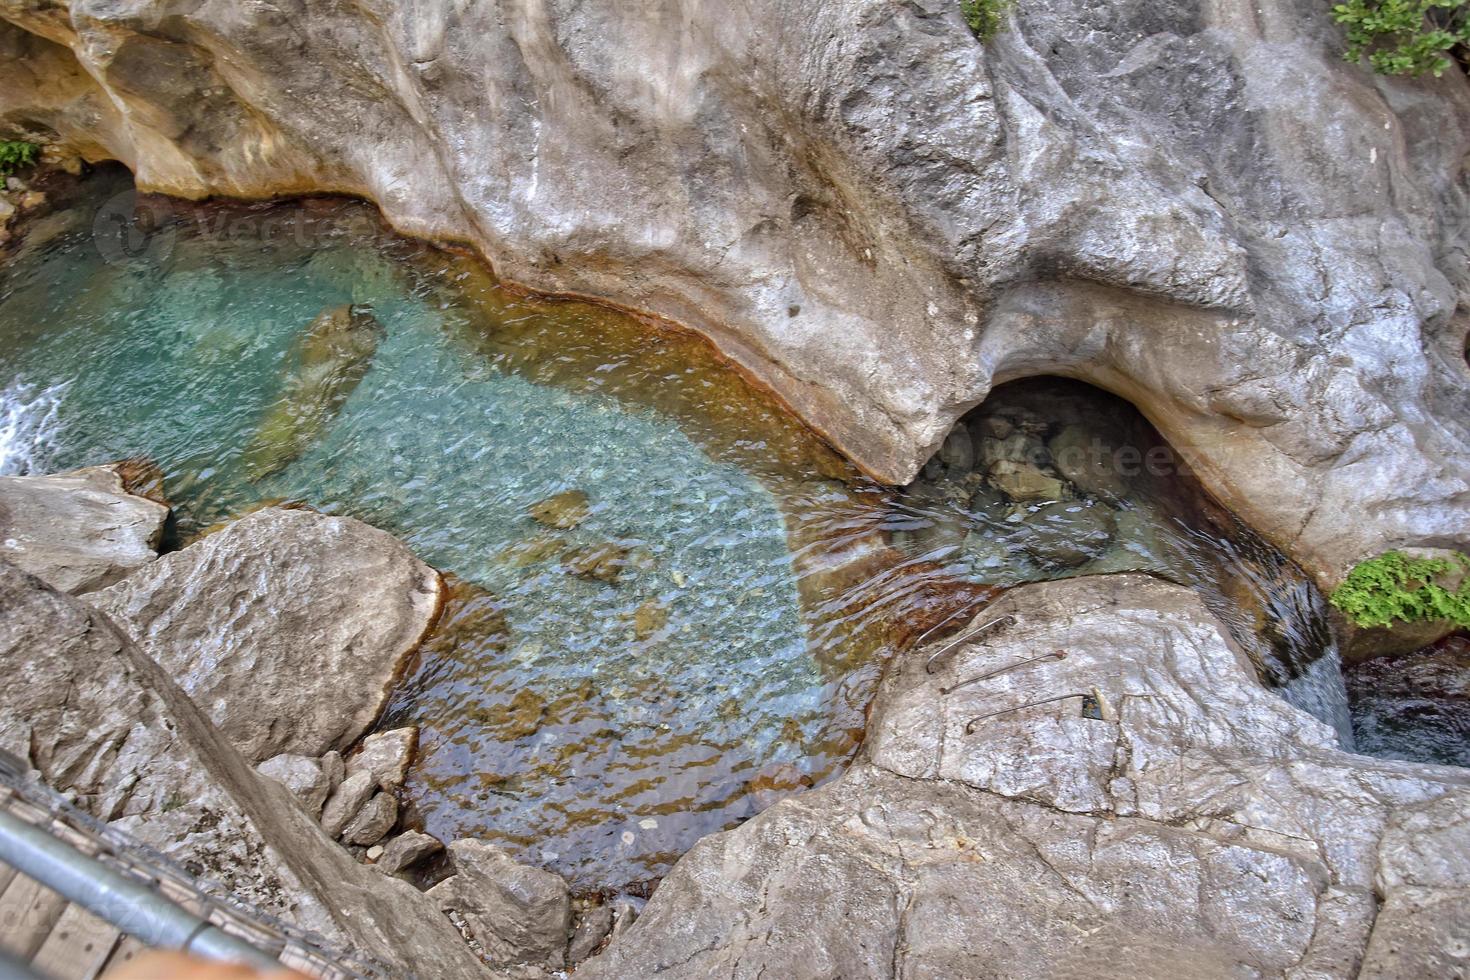 een natuurlijk wild landschap in de Turks bergen met een interessant waterval en de sapadere Ravijn foto